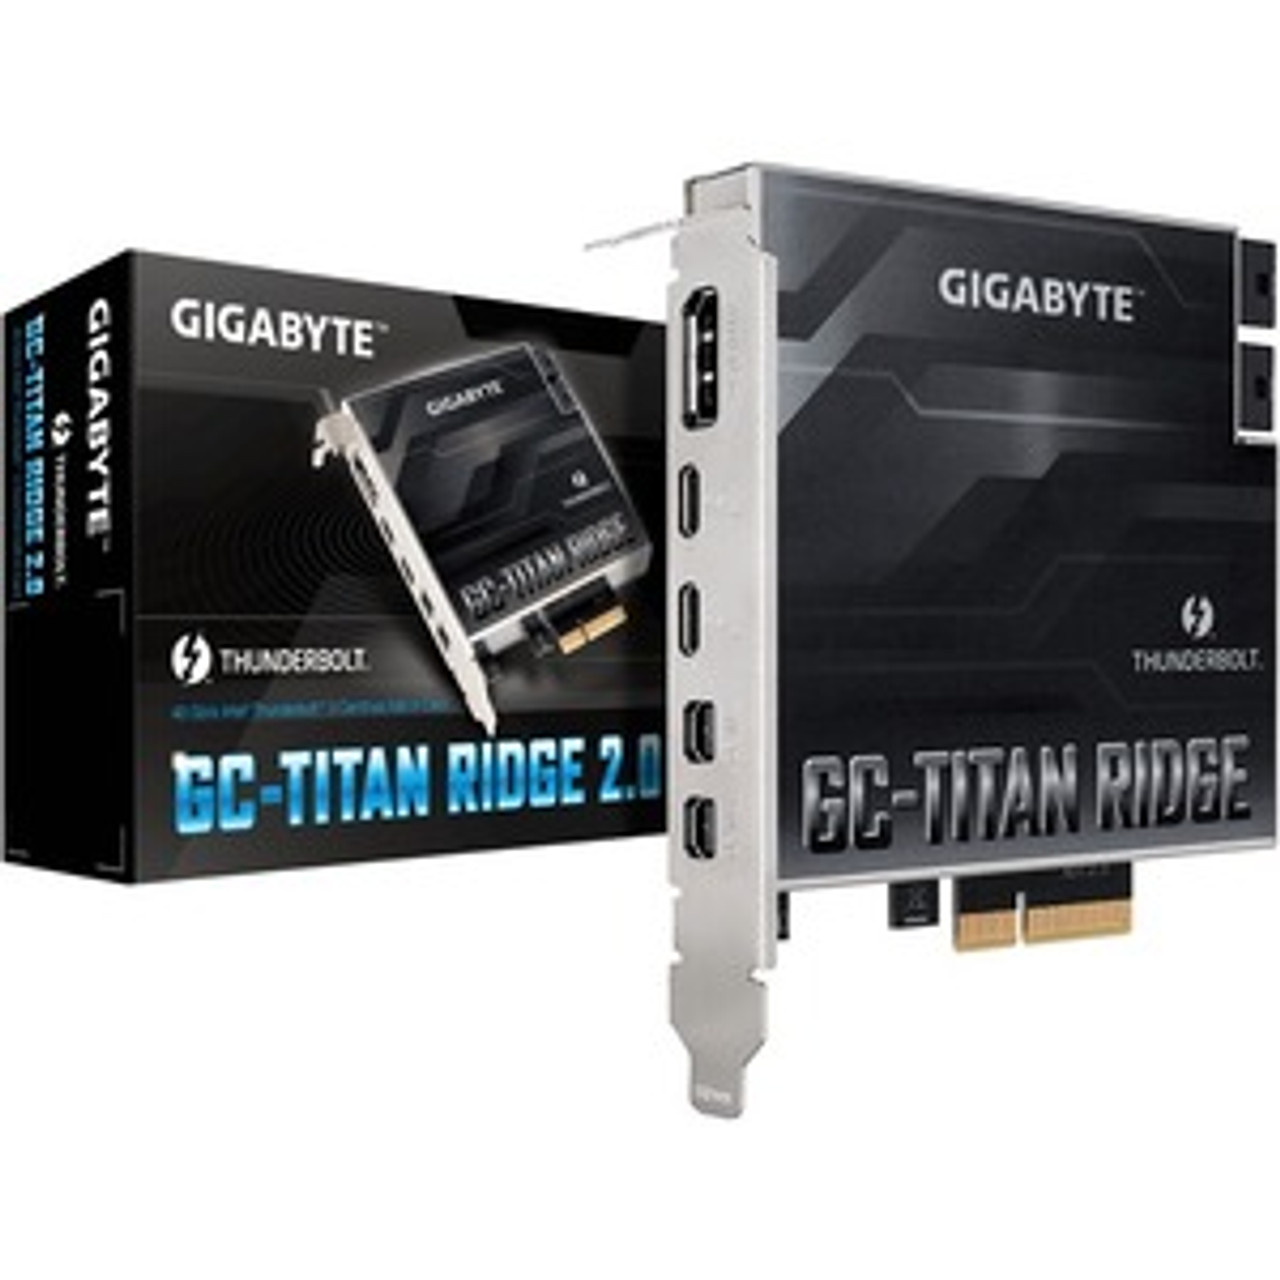 GC-TITAN RIDGE 2.0